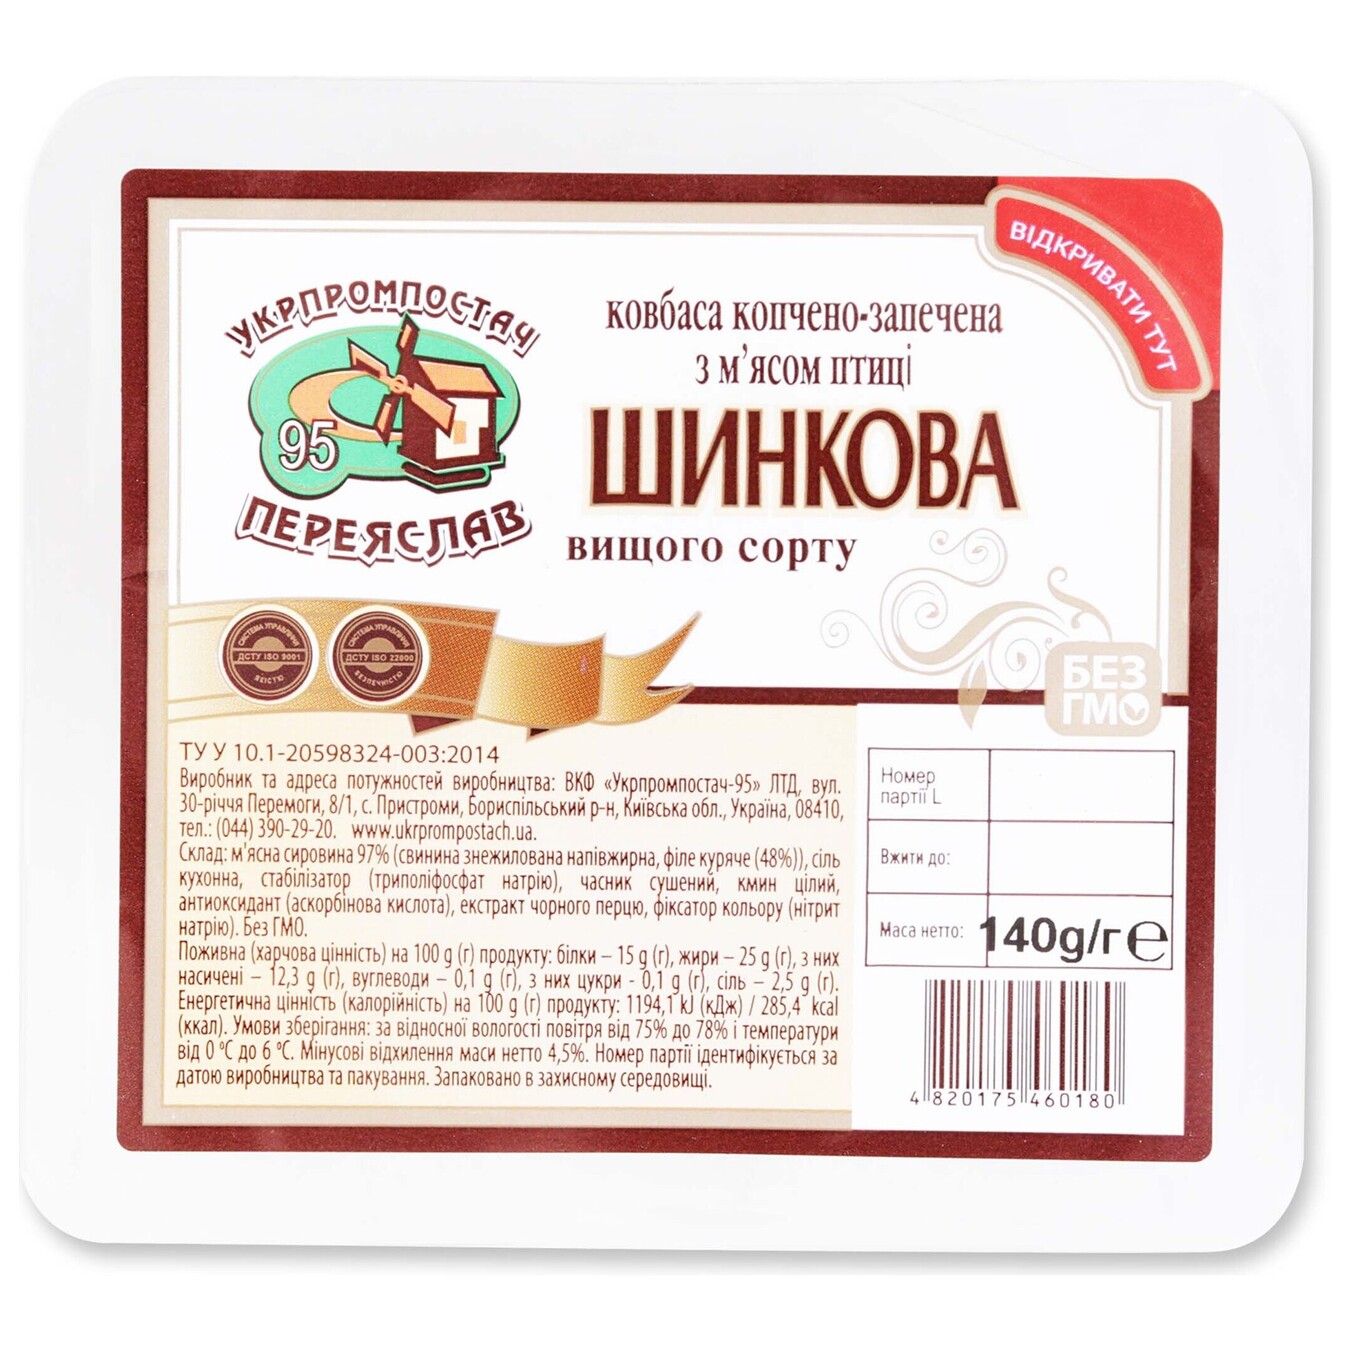 Колбаса Укрпромпостач-95 Ветчина с мясом птицы копчено-запеченная 140г